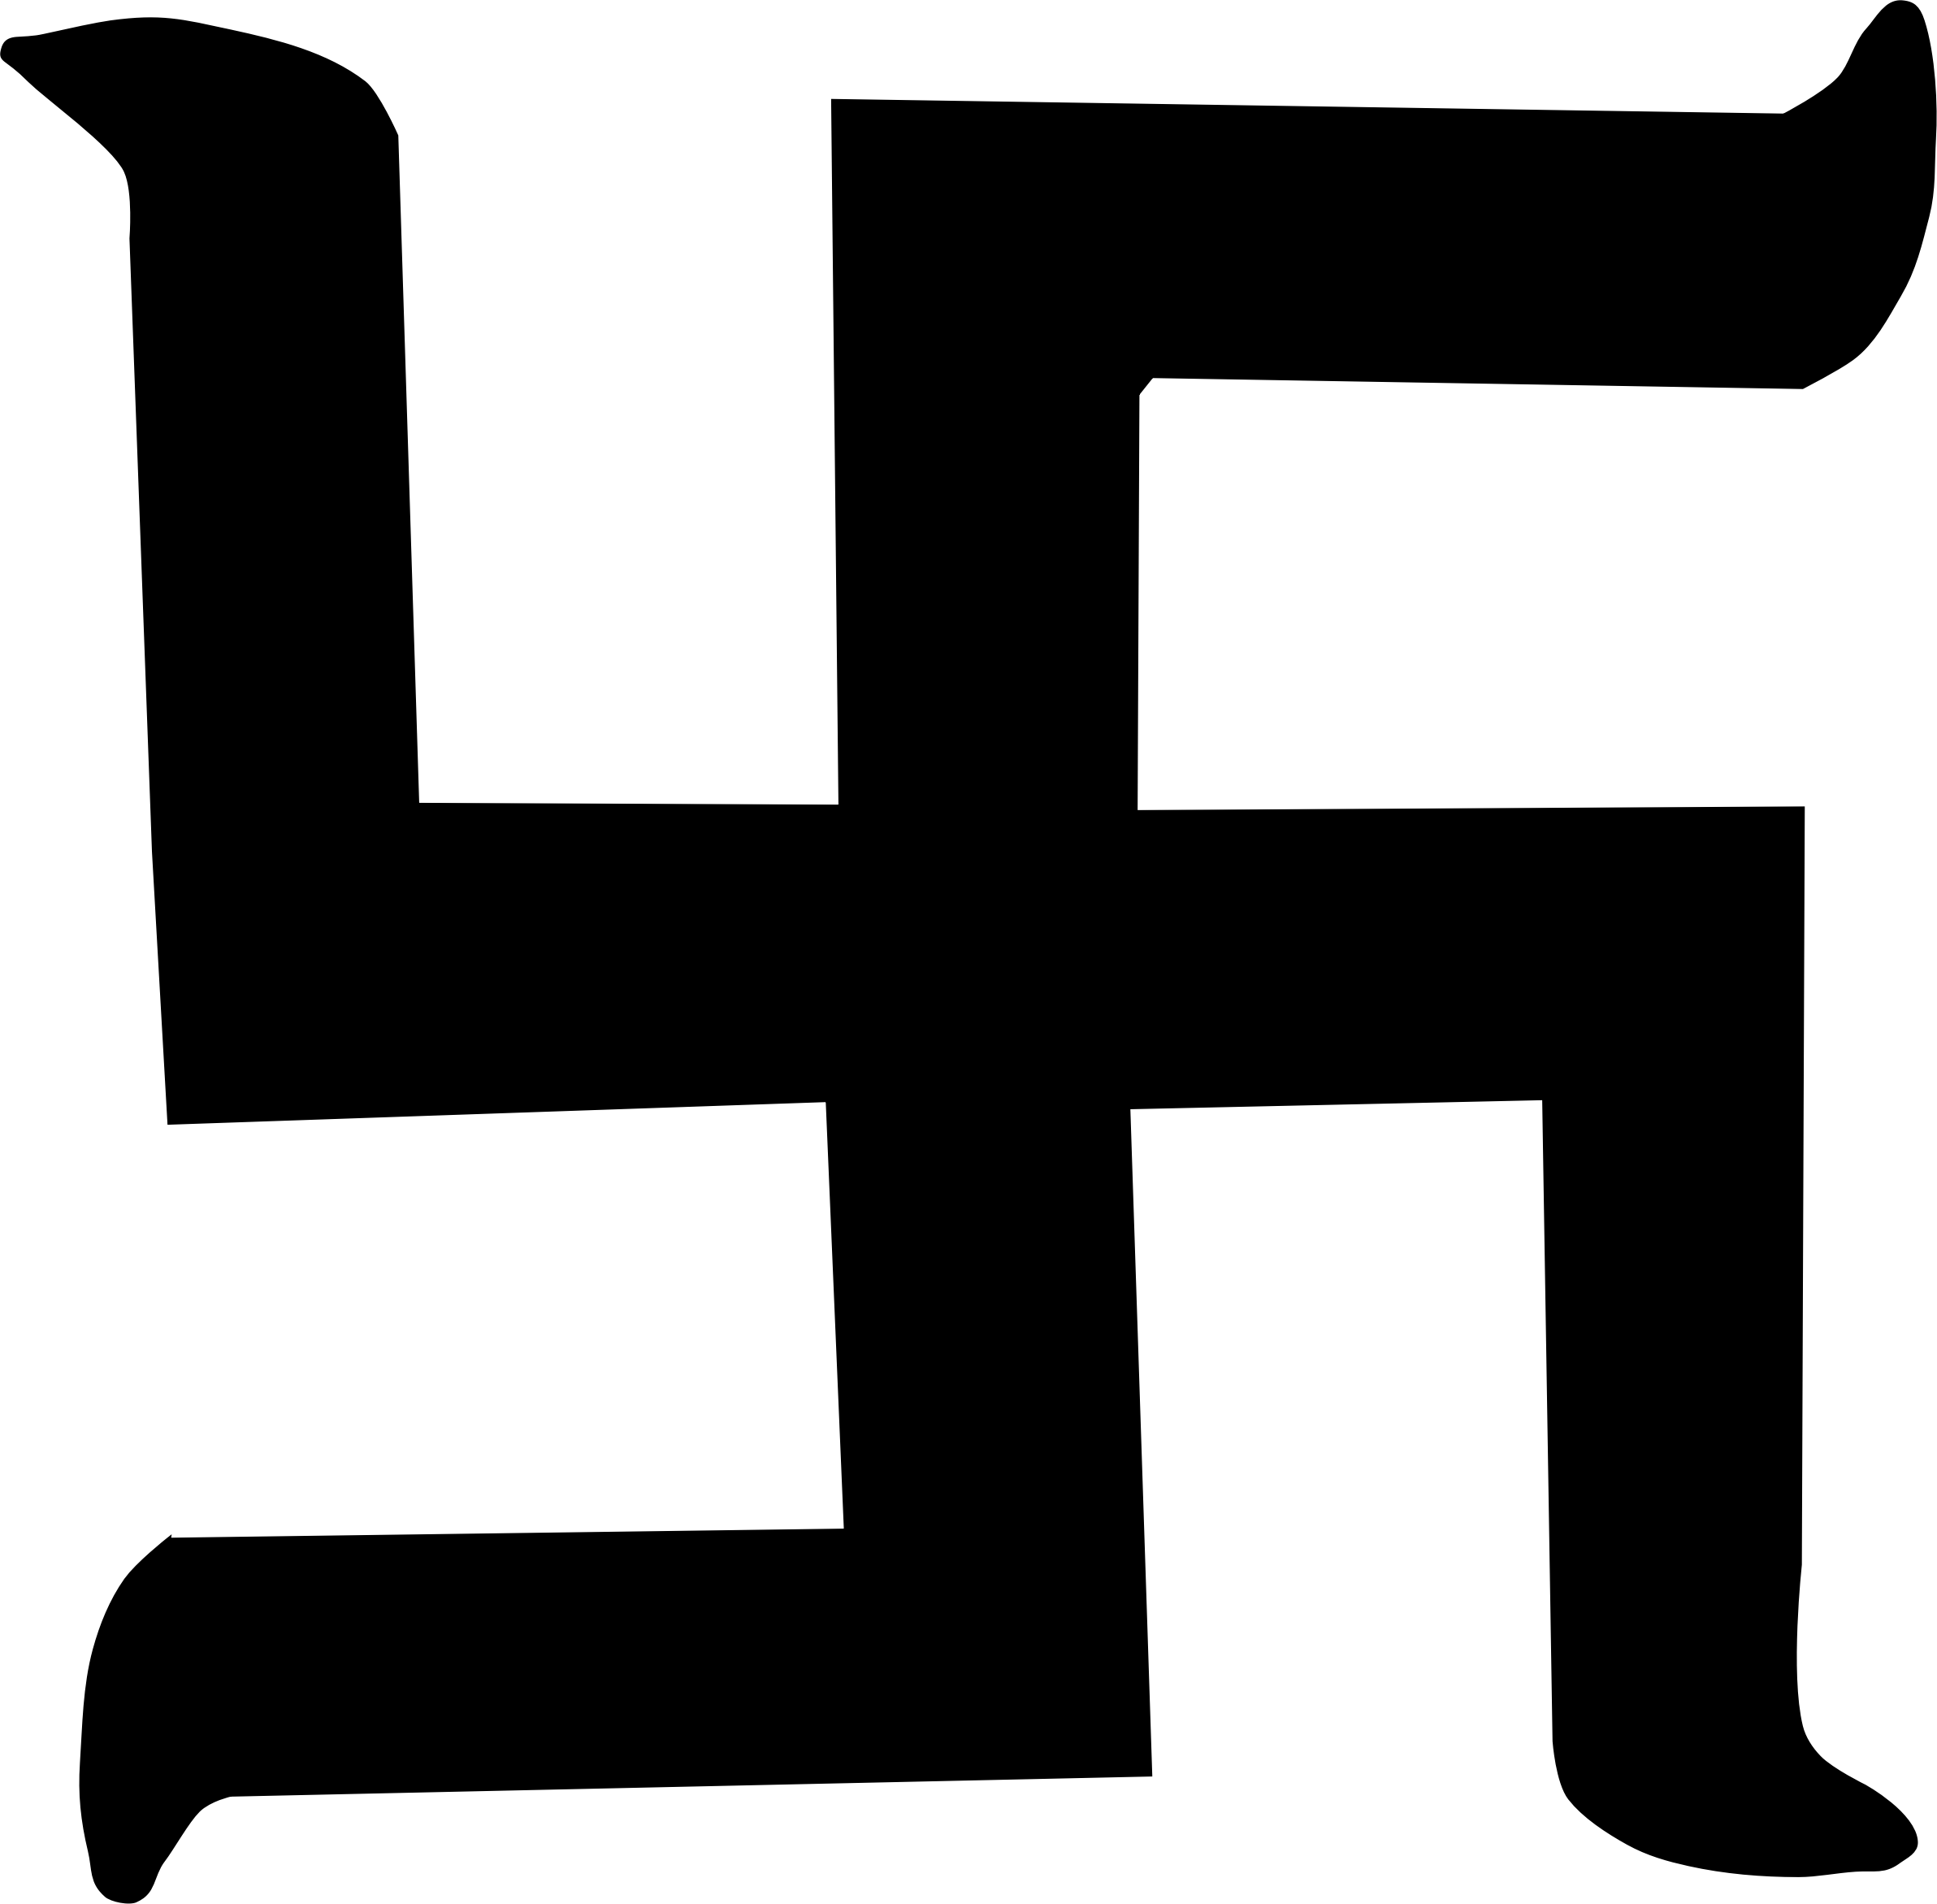 Big Image - Swastik Logo Black & White (2384x2343)